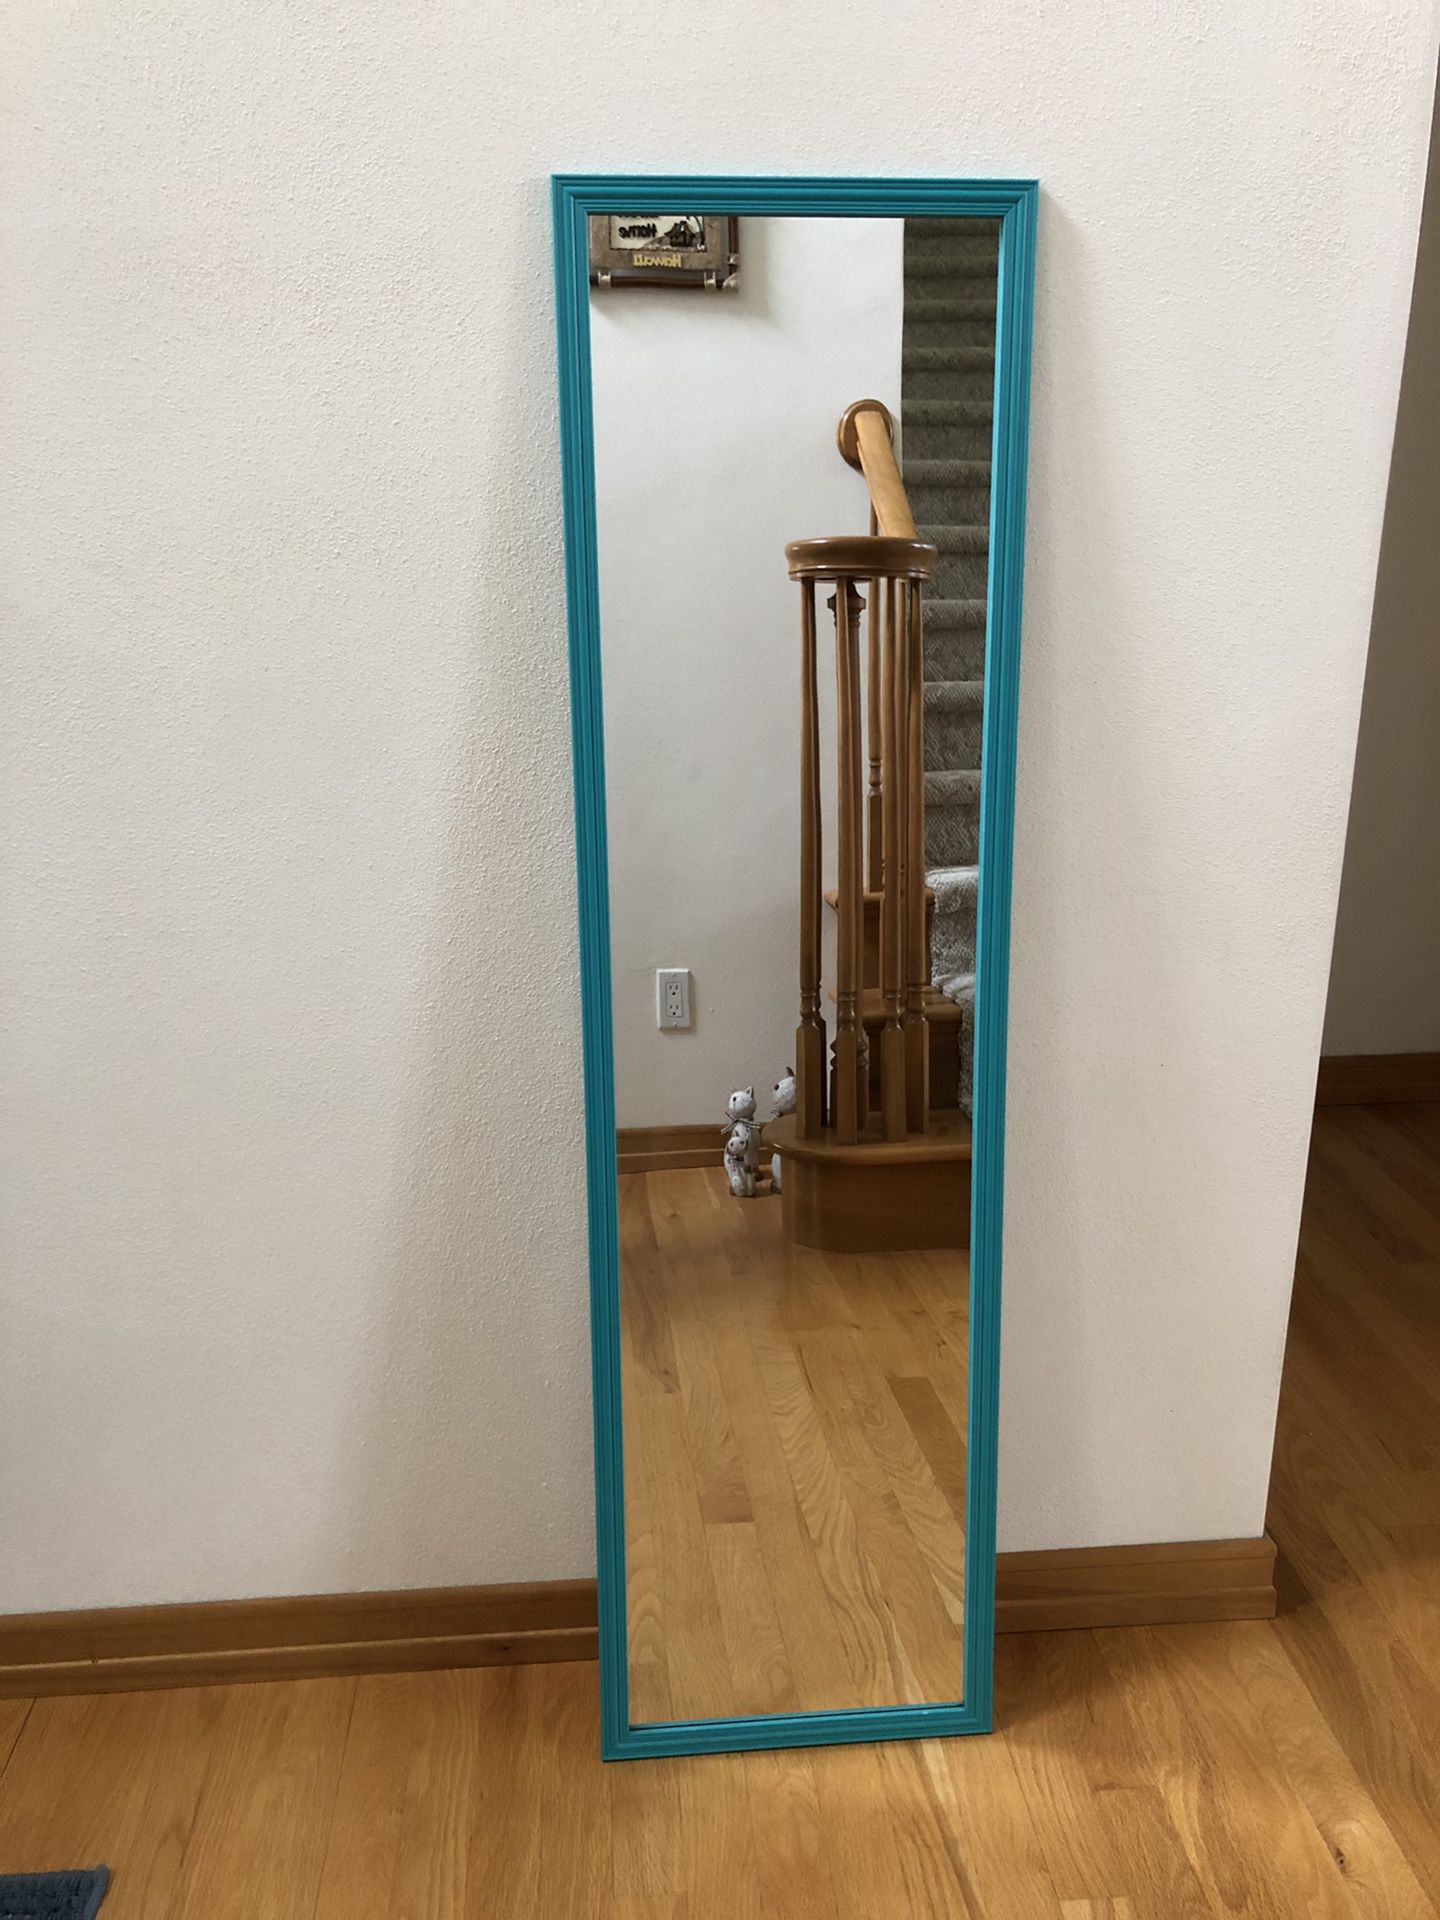 Teal framed full length mirror